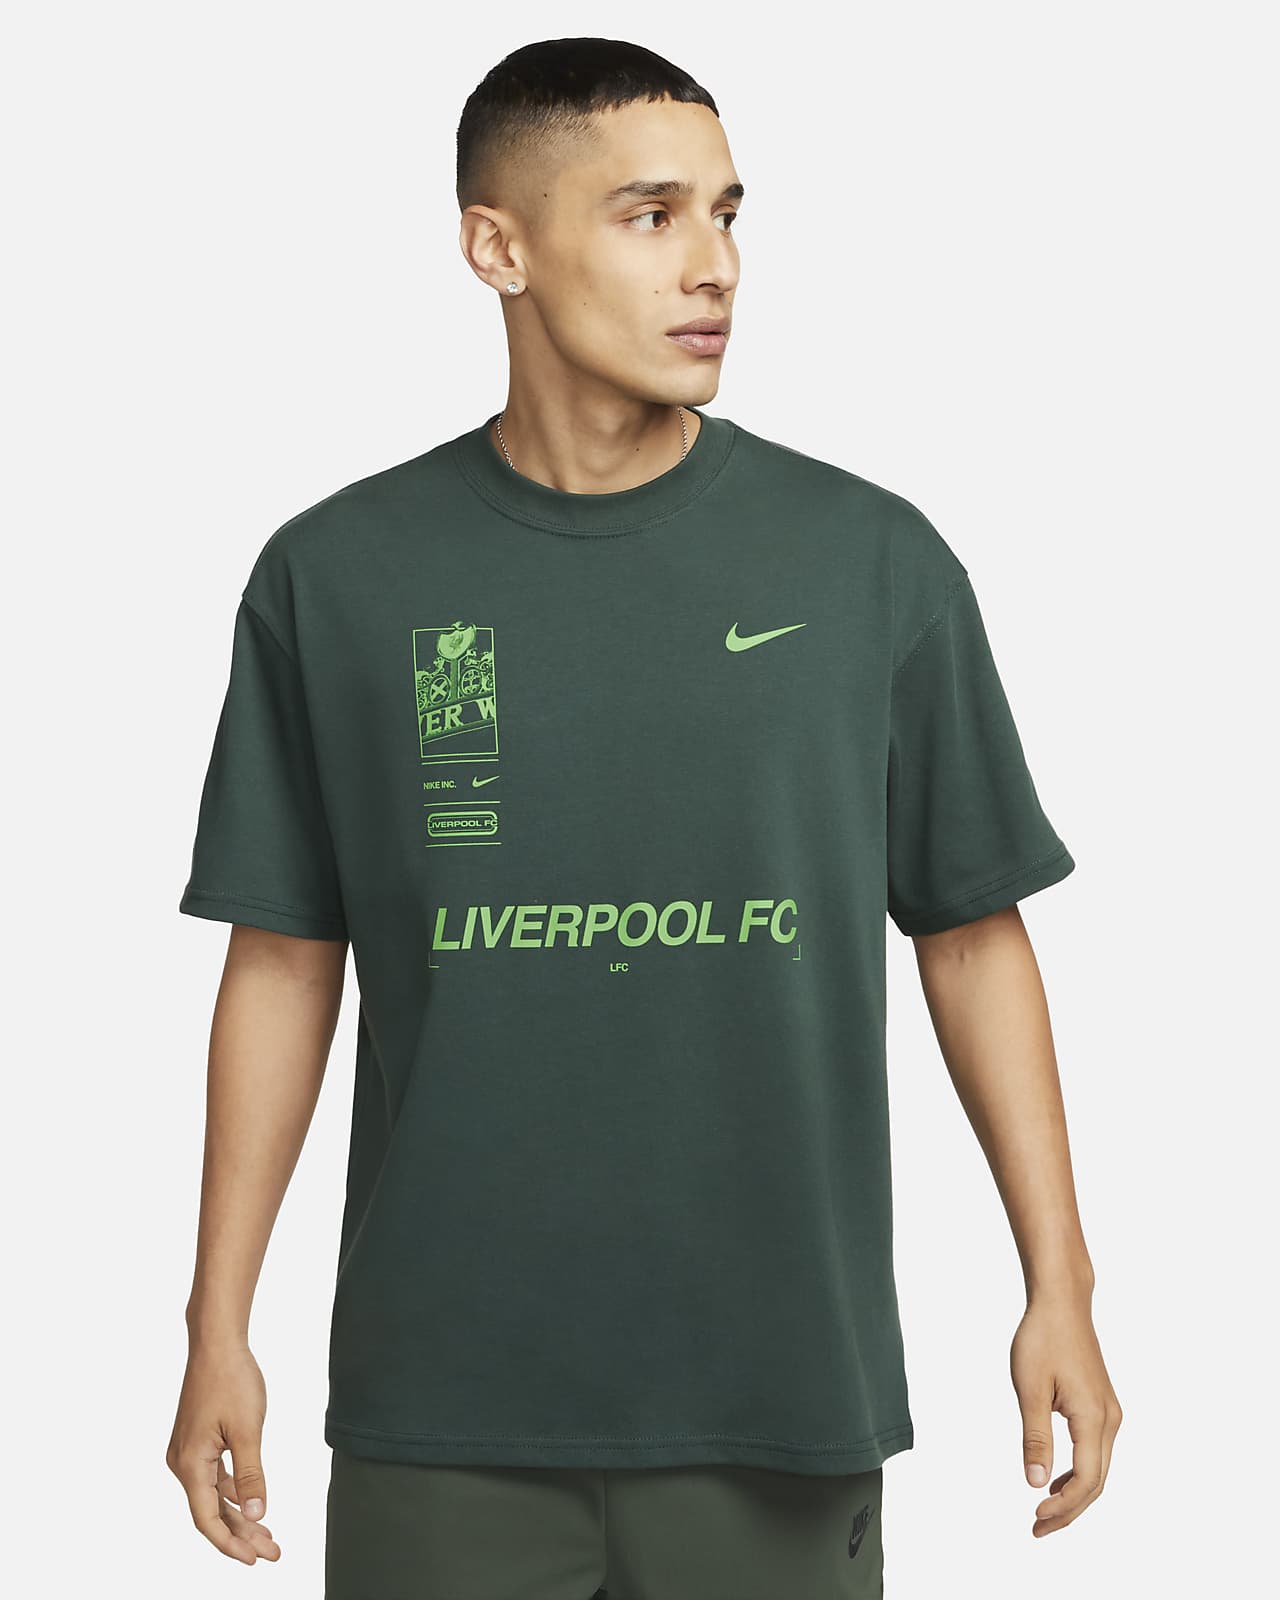 Fotbolls-t-shirt Liverpool FC Nike Max90 för män